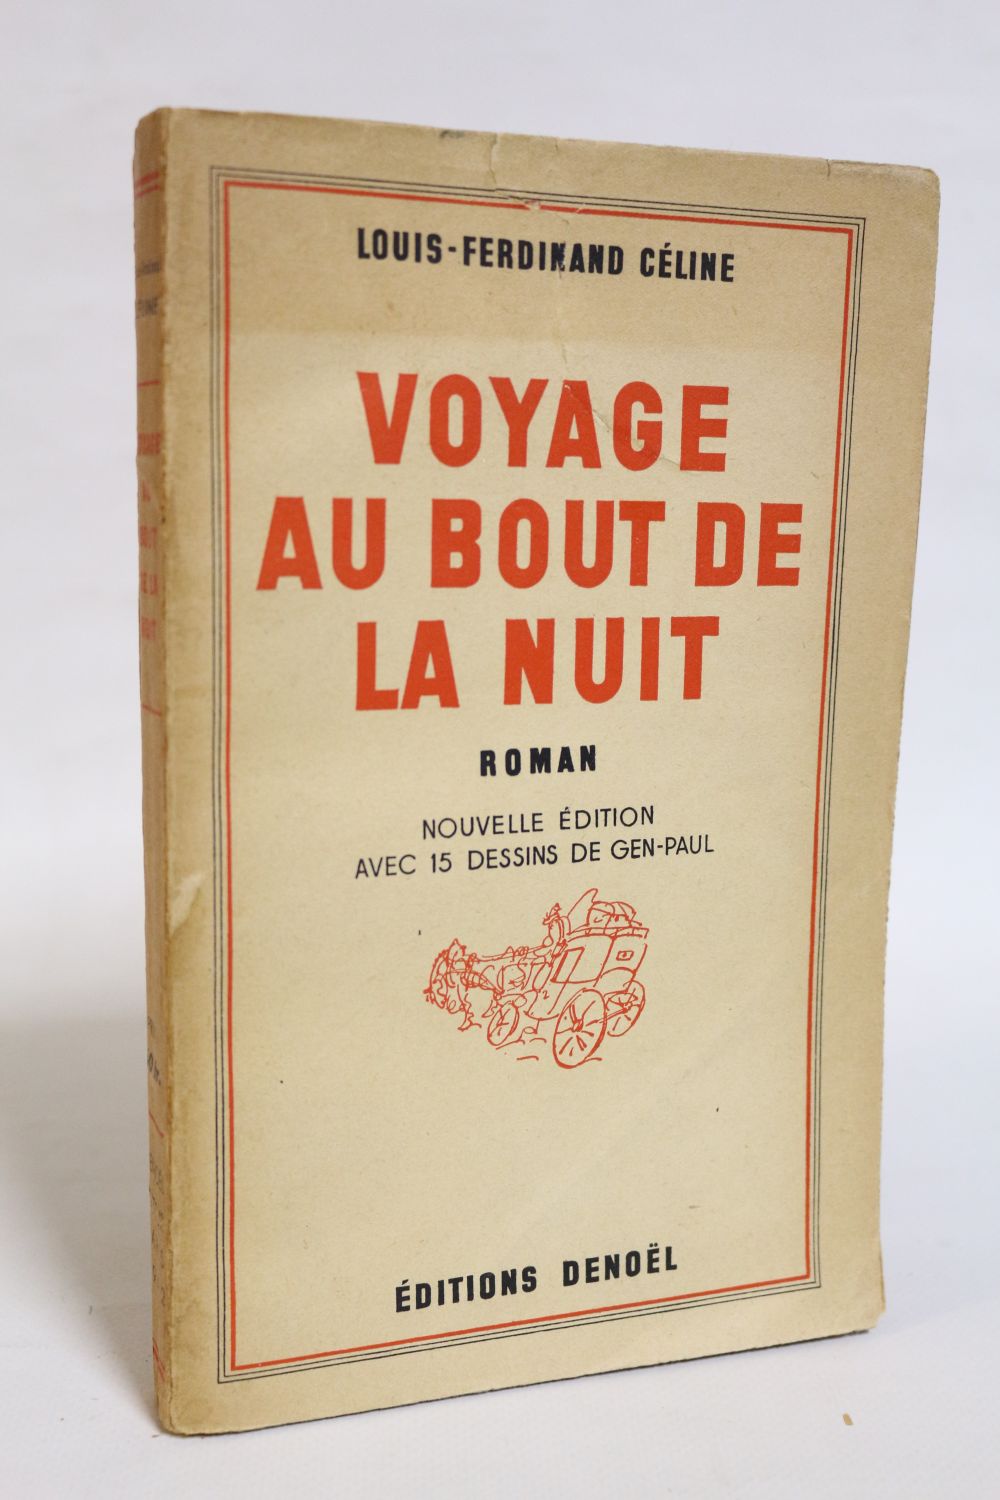 Voyage au bout de la nuit - Louis-Ferdinand Céline - Denoel